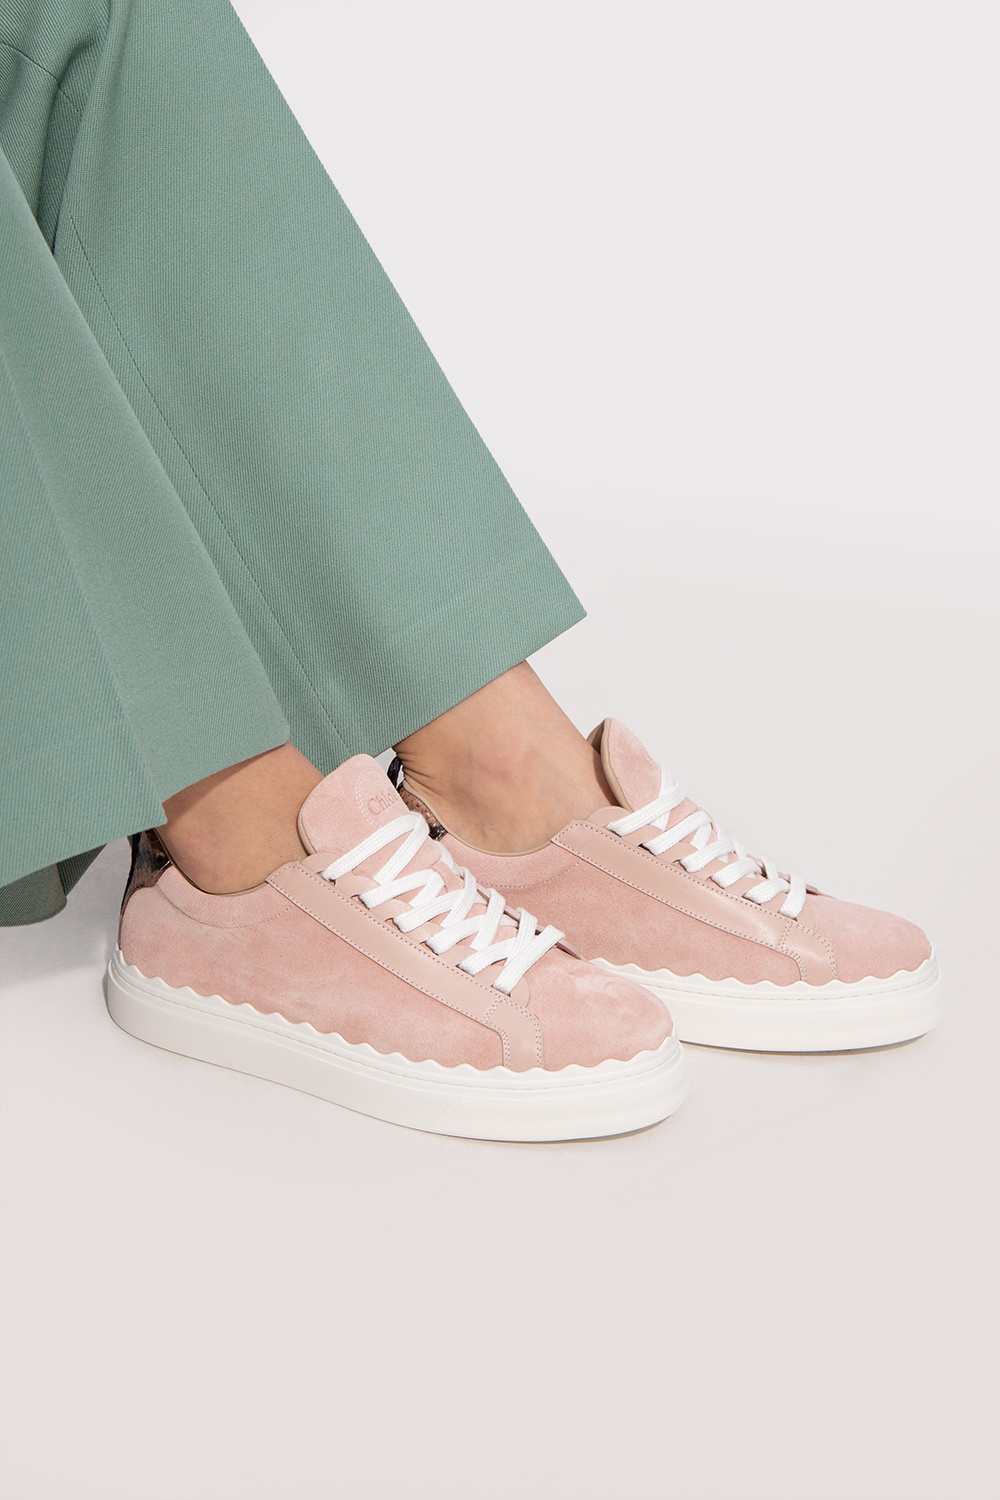 Chloé ‘Lauren’ platform sneakers